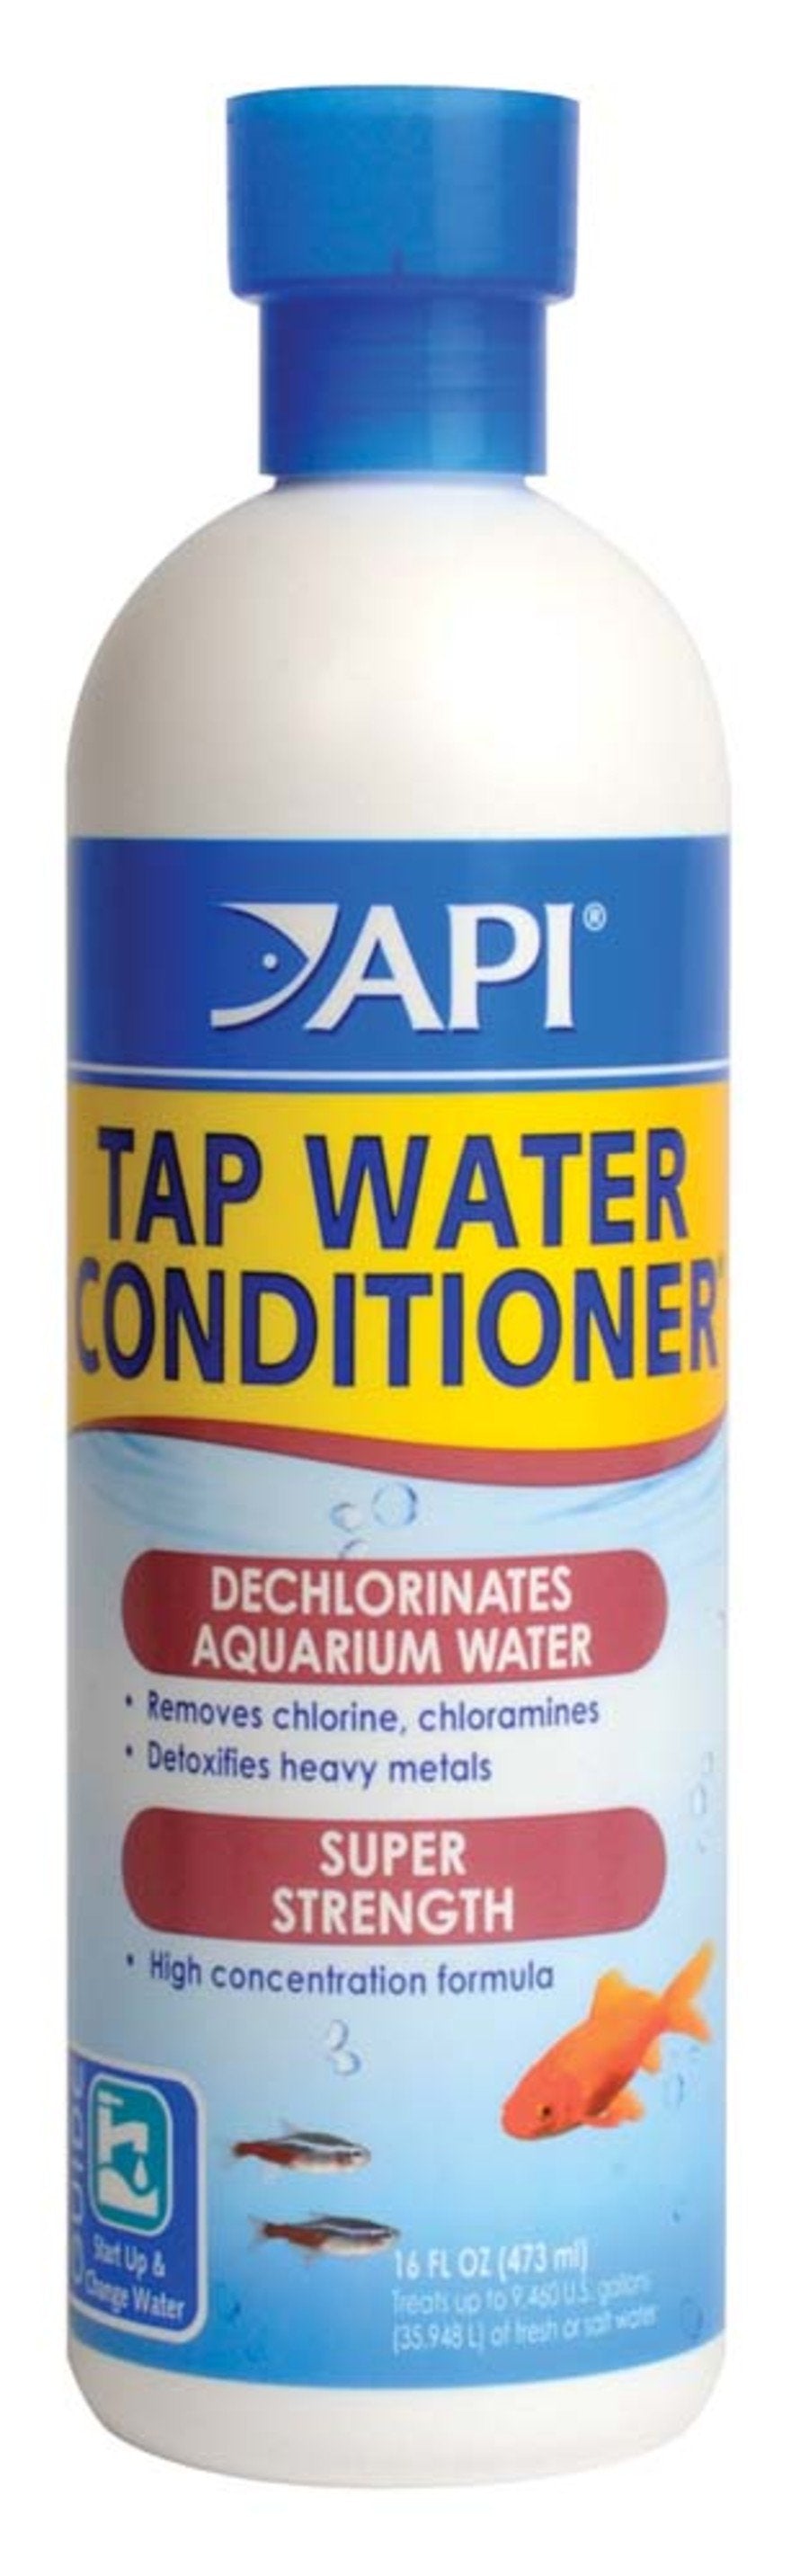 API Tap Water Conditioner,16 oz, API